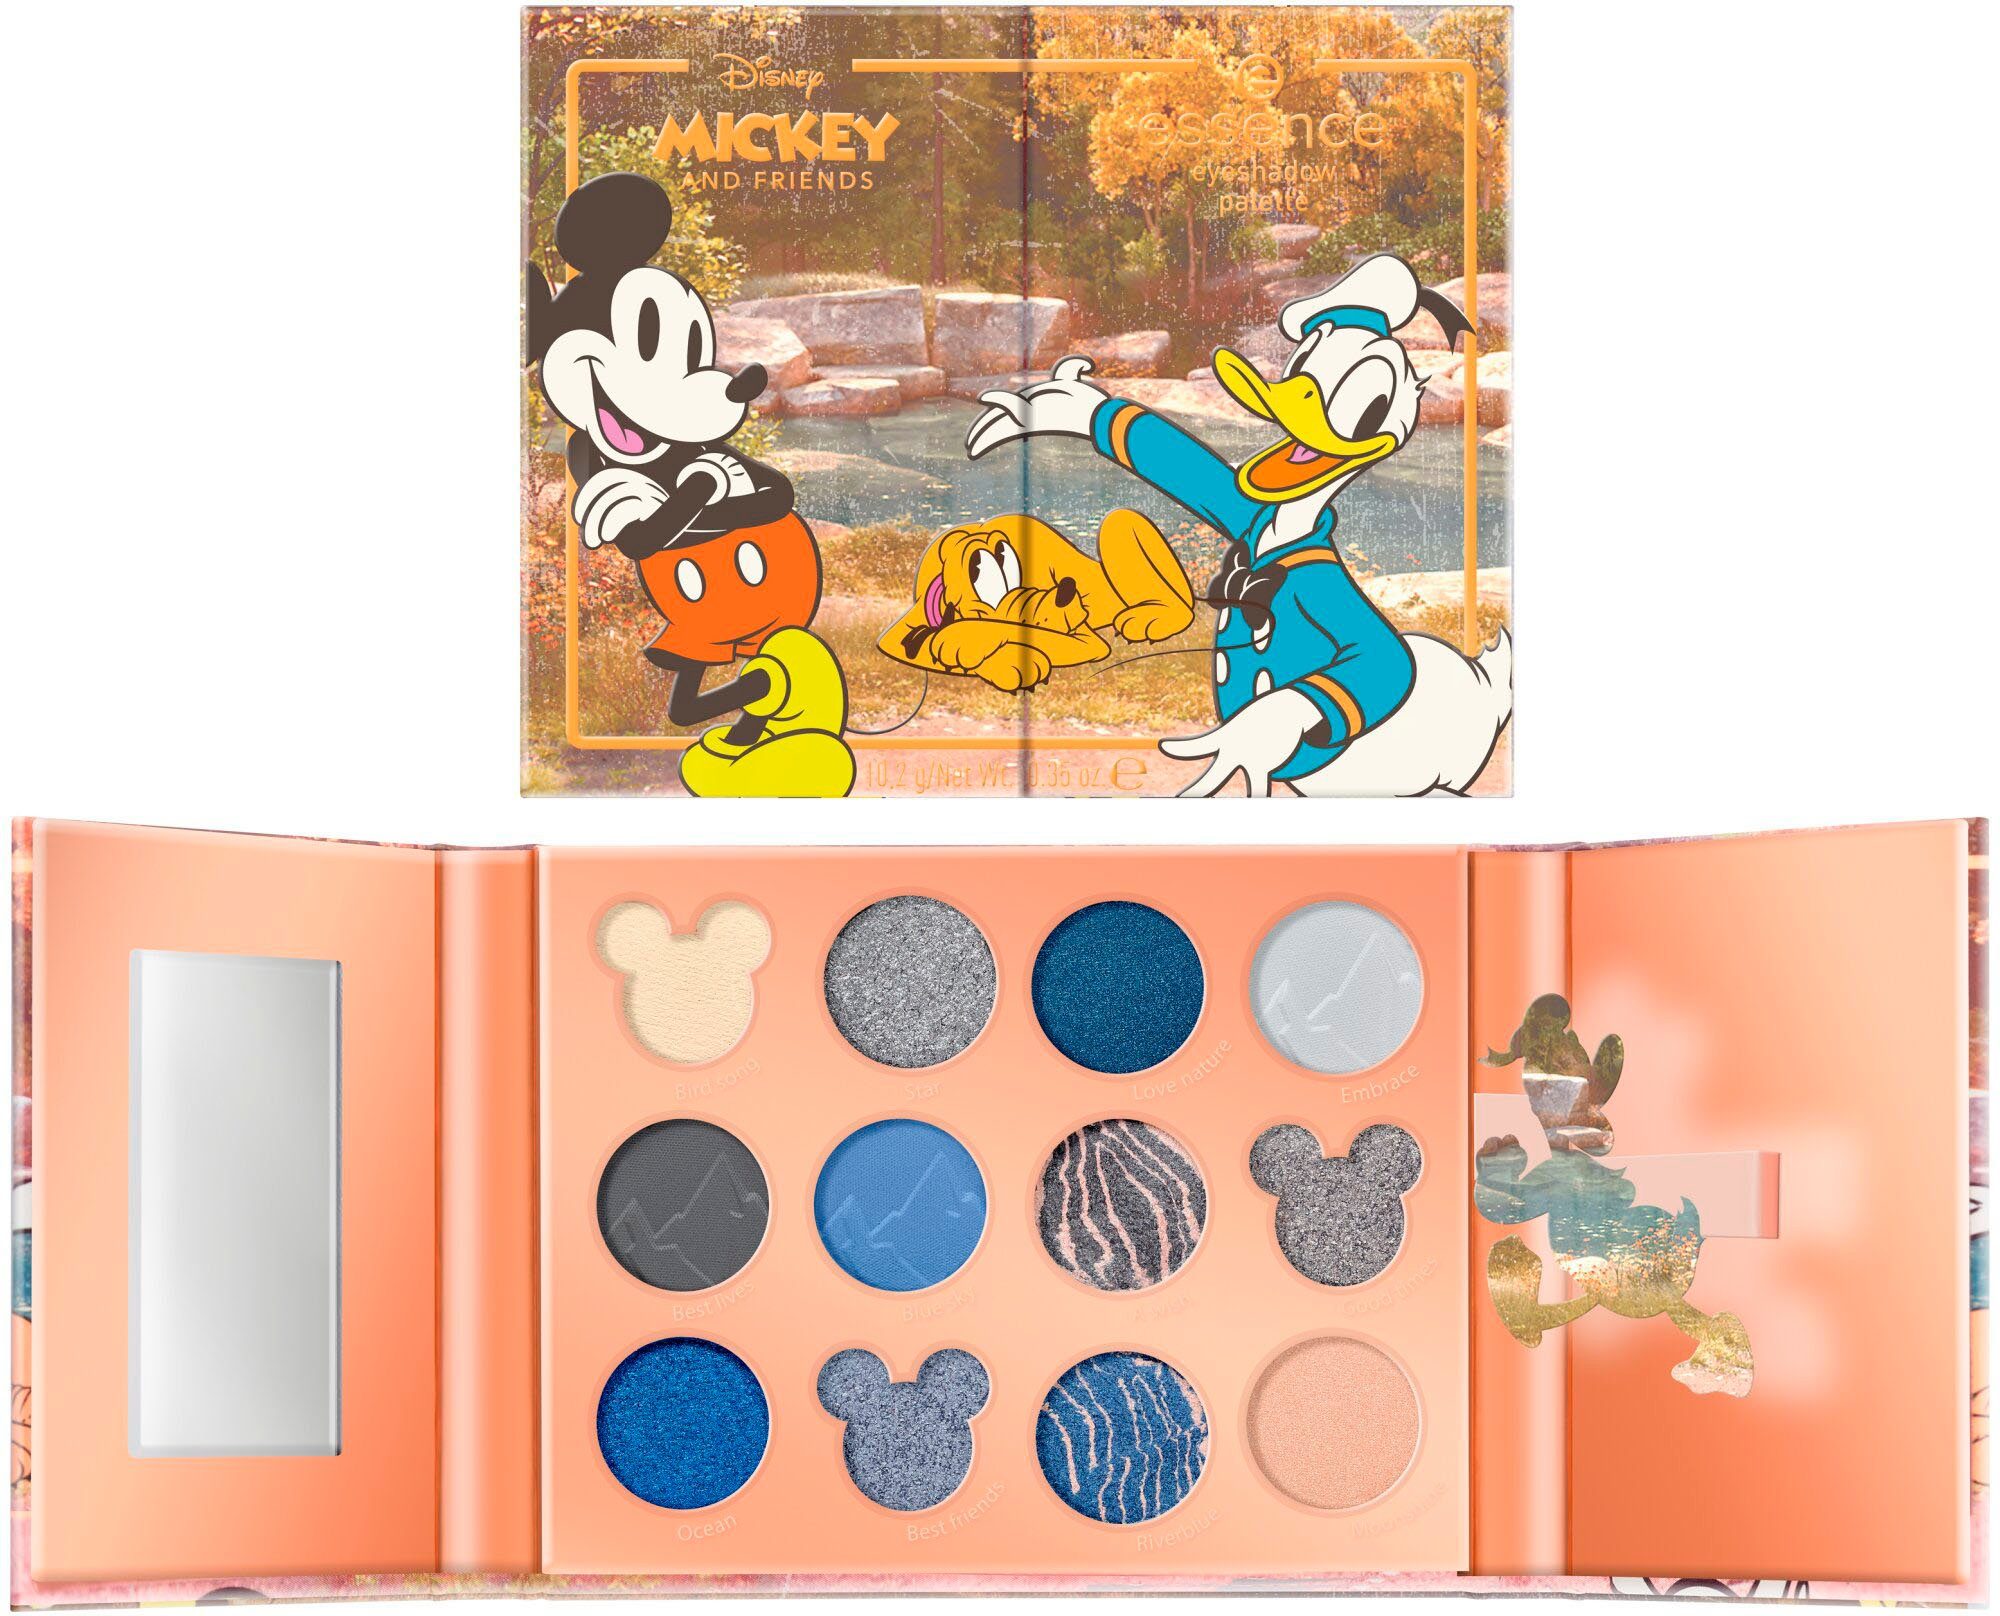 Essence Lidschatten-Palette mit Disney Augen-Make-Up unterschiedlichen Finishes eyeshadow palette, and Mickey Friends